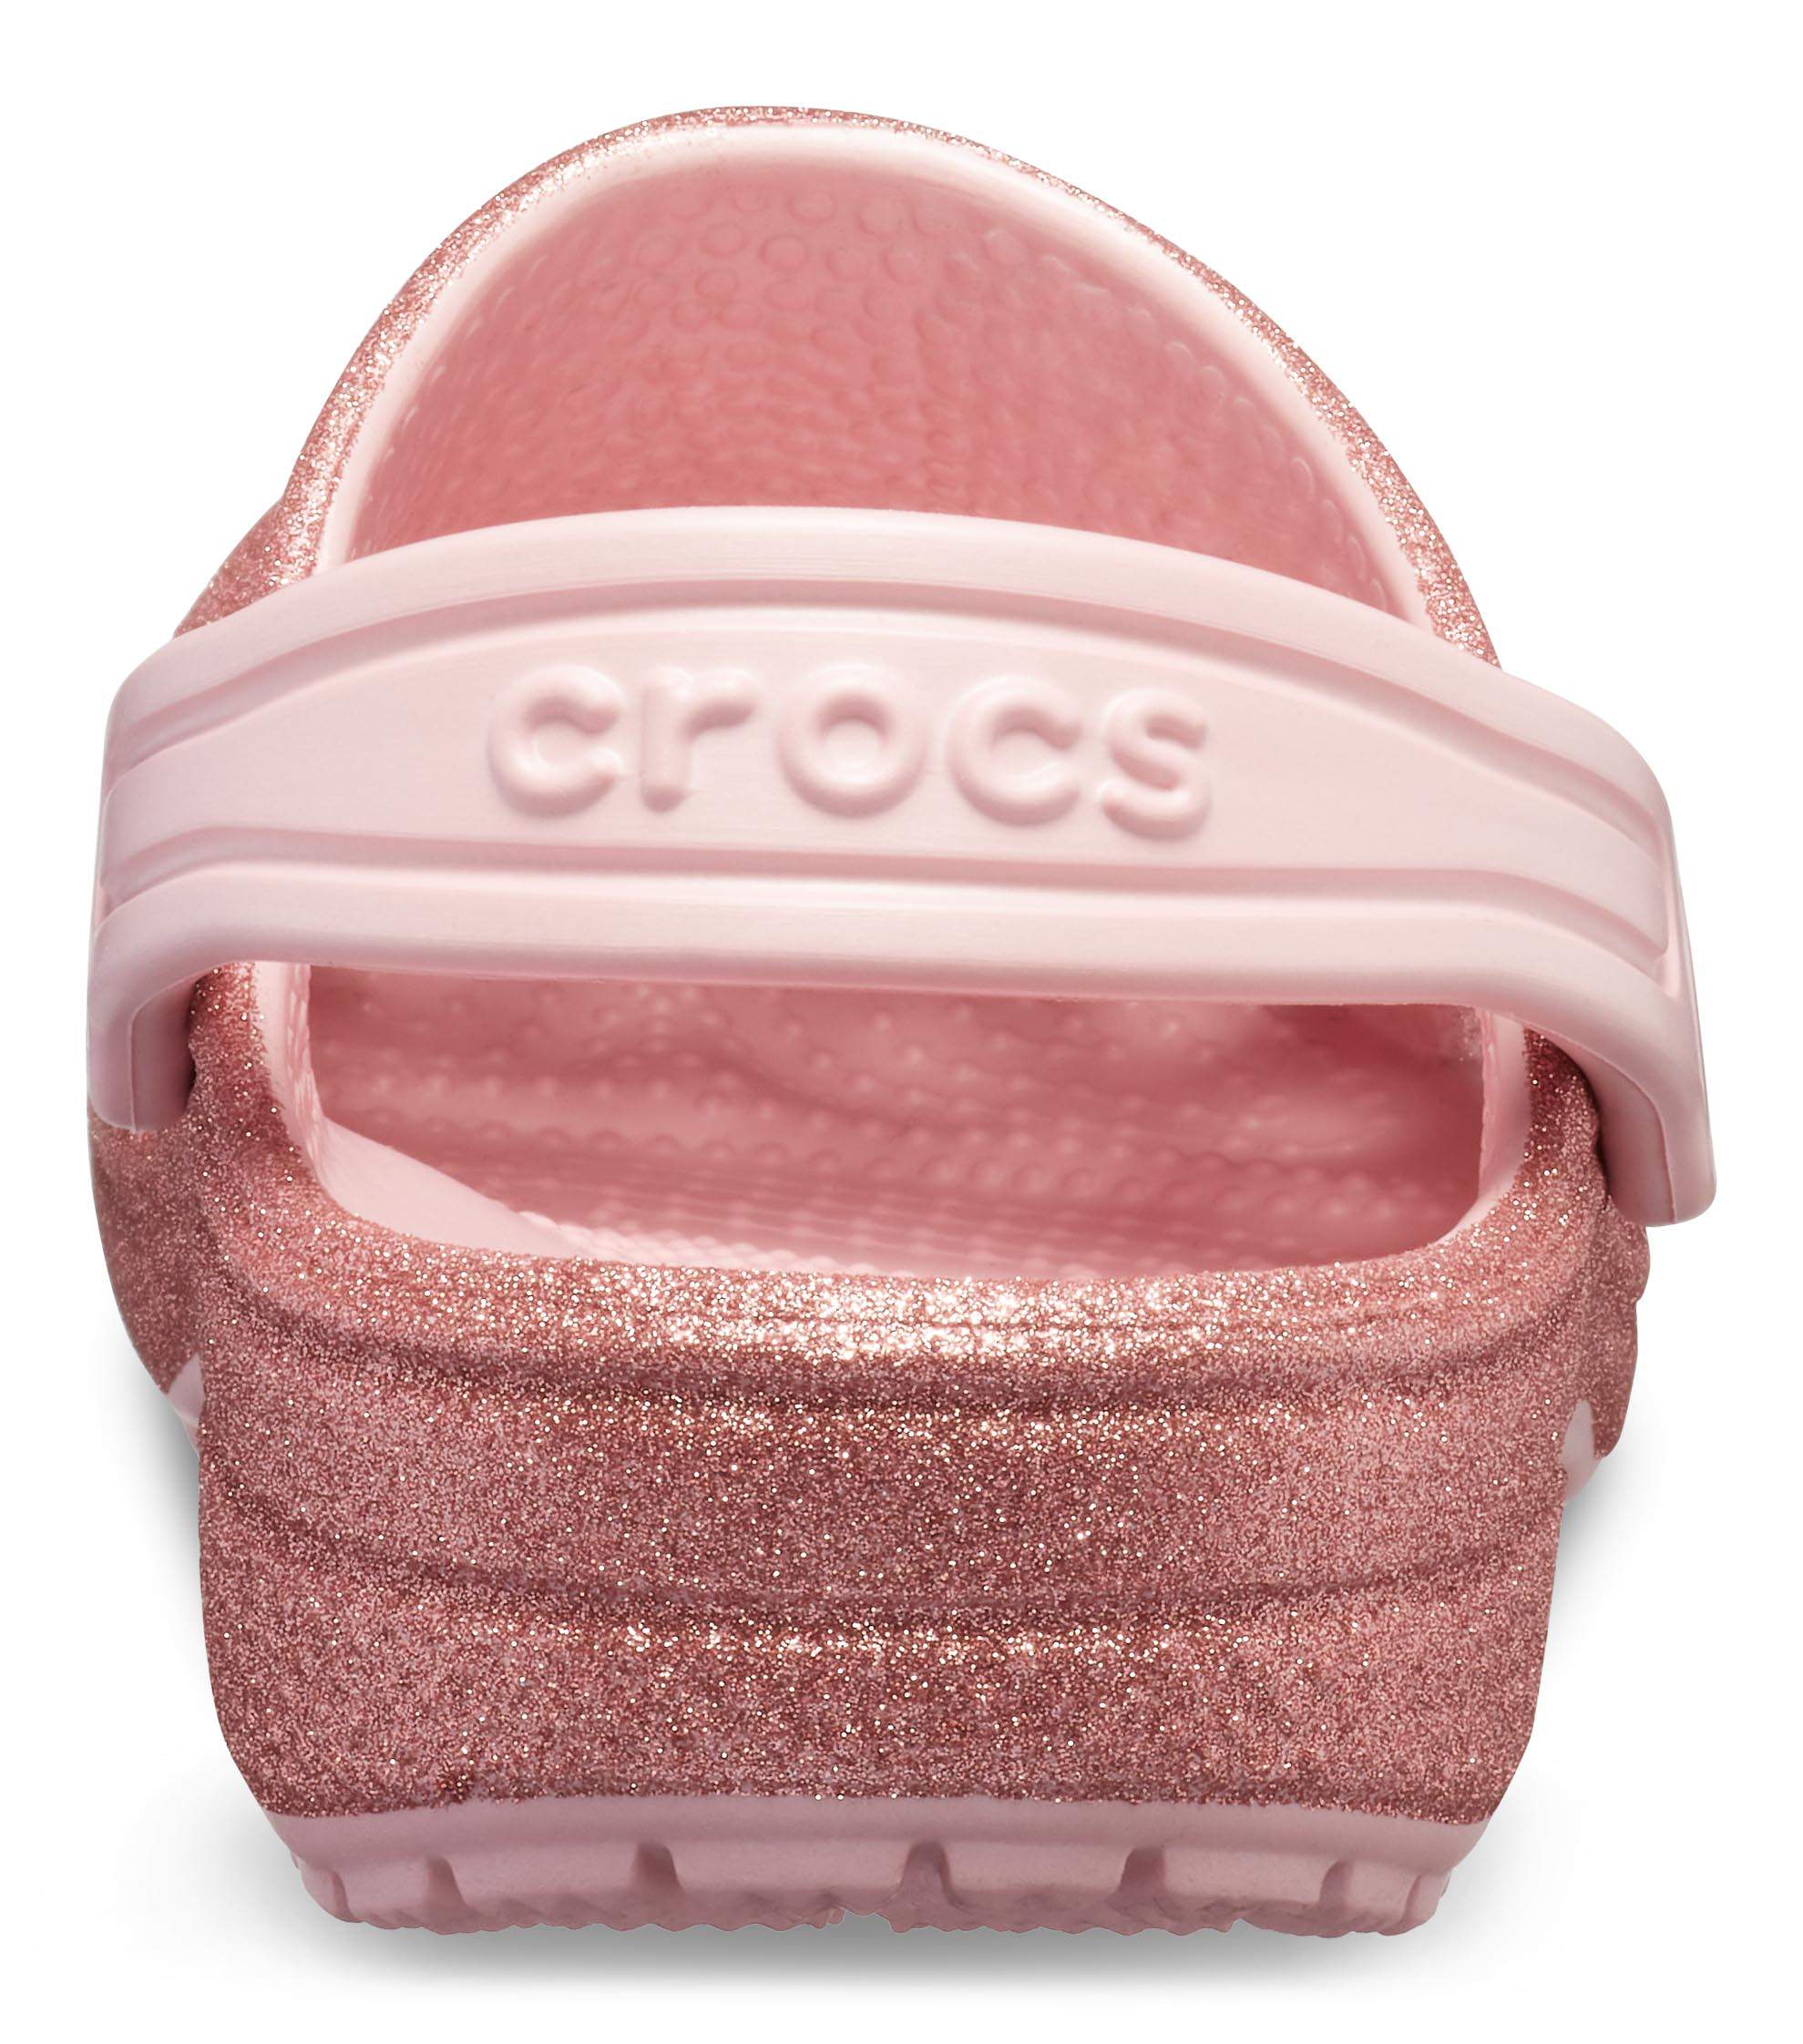 sparkly crocs